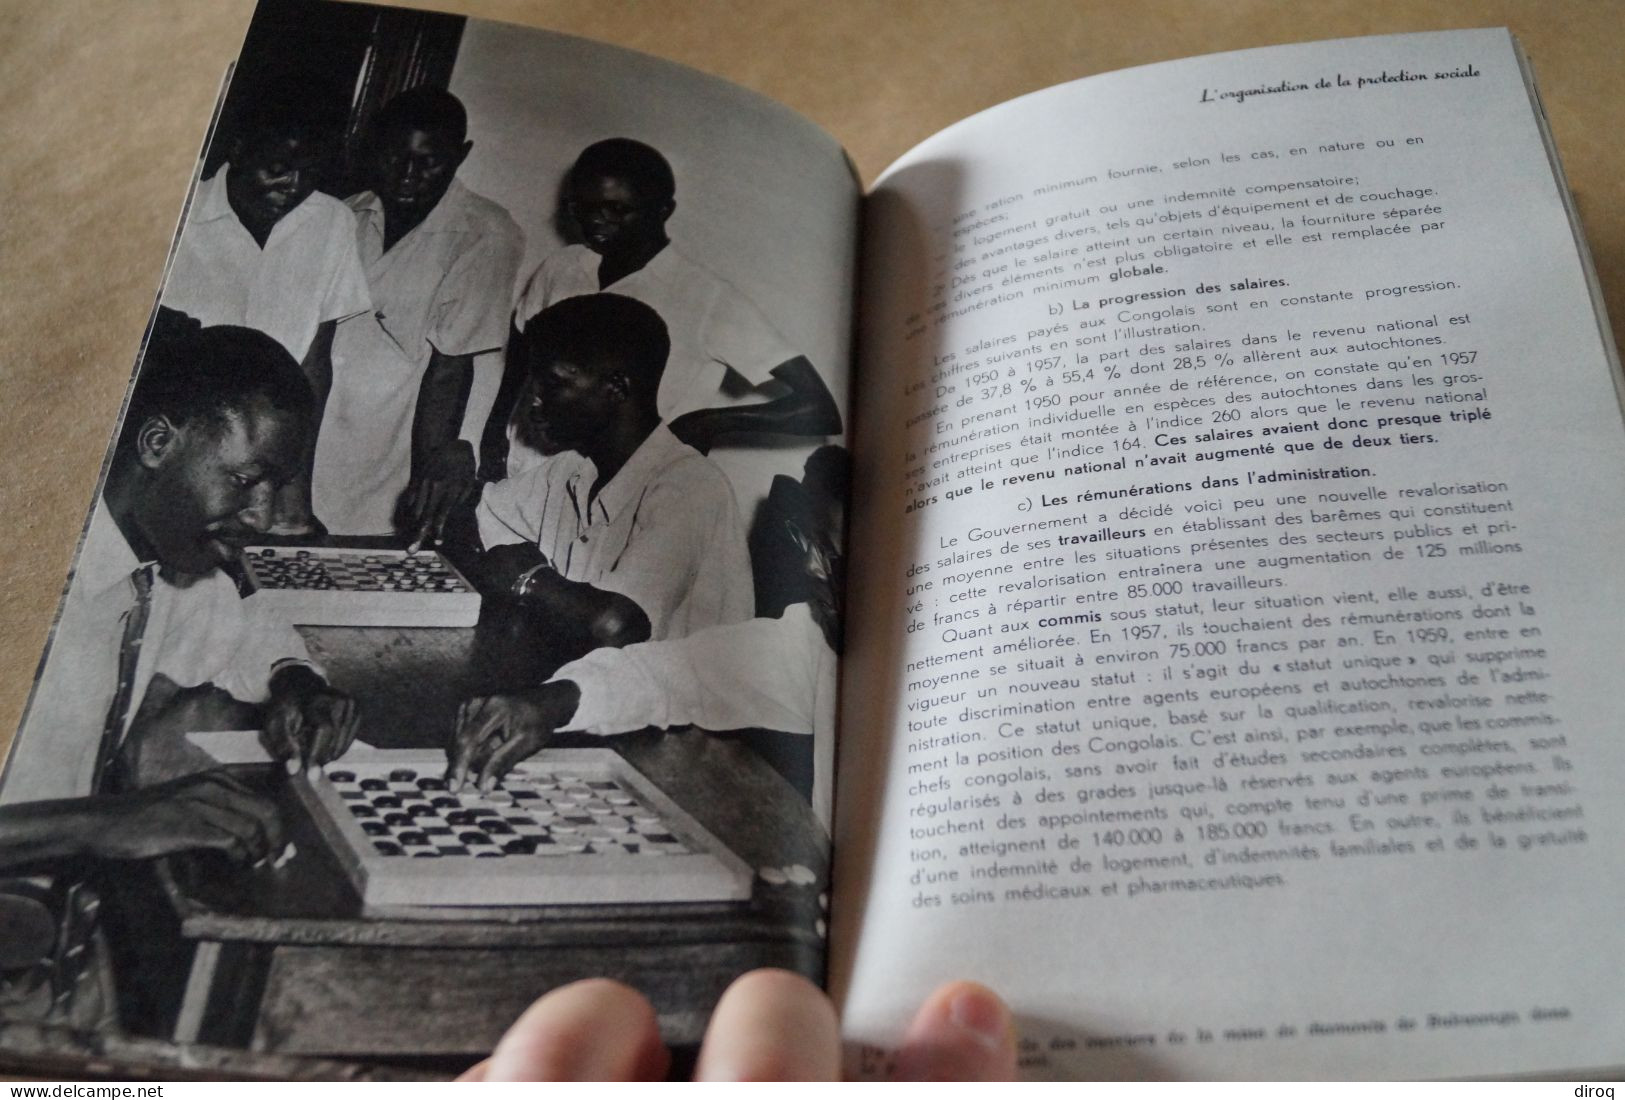 Congo Belge,1957, 13 millions de Congolais,80 pages,24 Cm. sur 16 Cm.